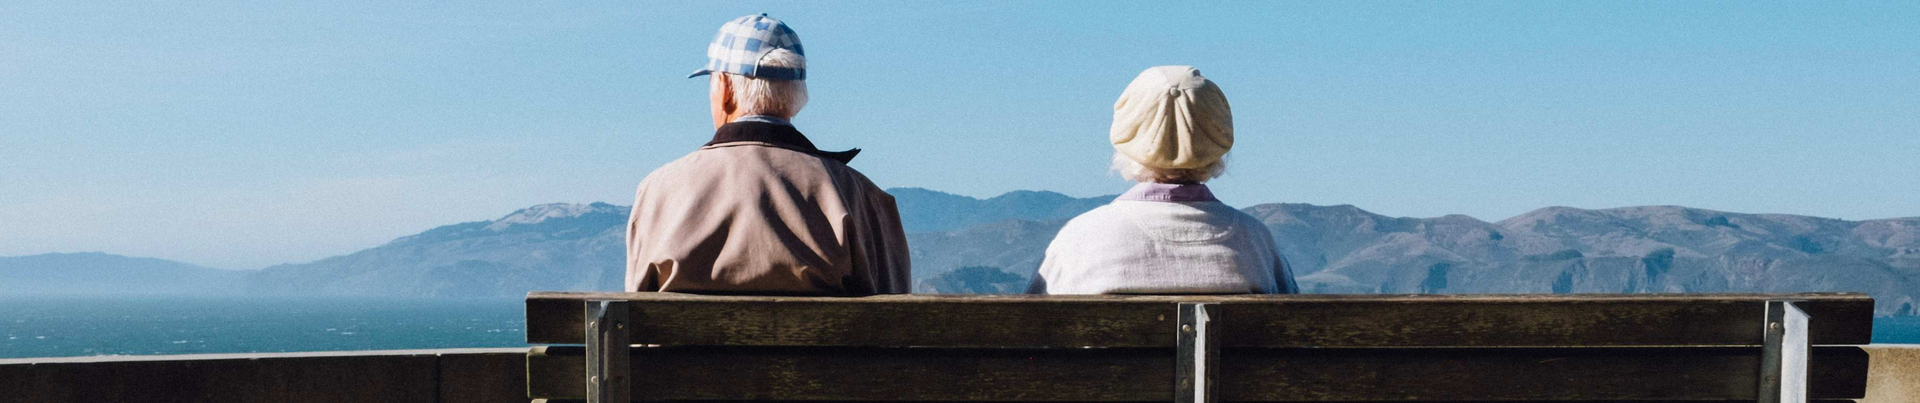 Mann mit Demenz sitzt mit seiner Frau auf einer Bank